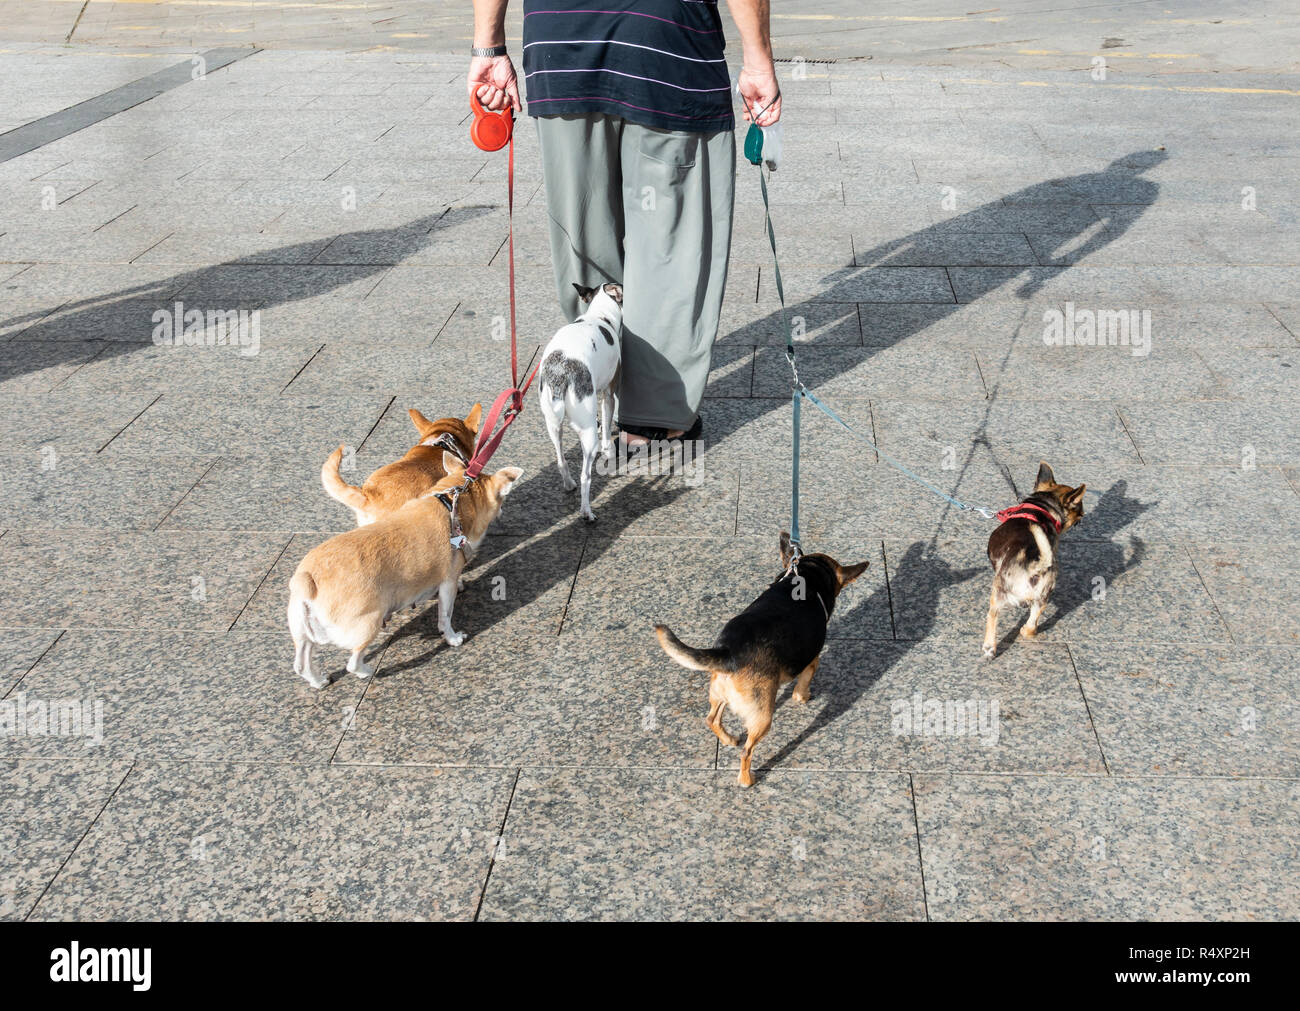 Elderly man walking five dogs Stock Photo